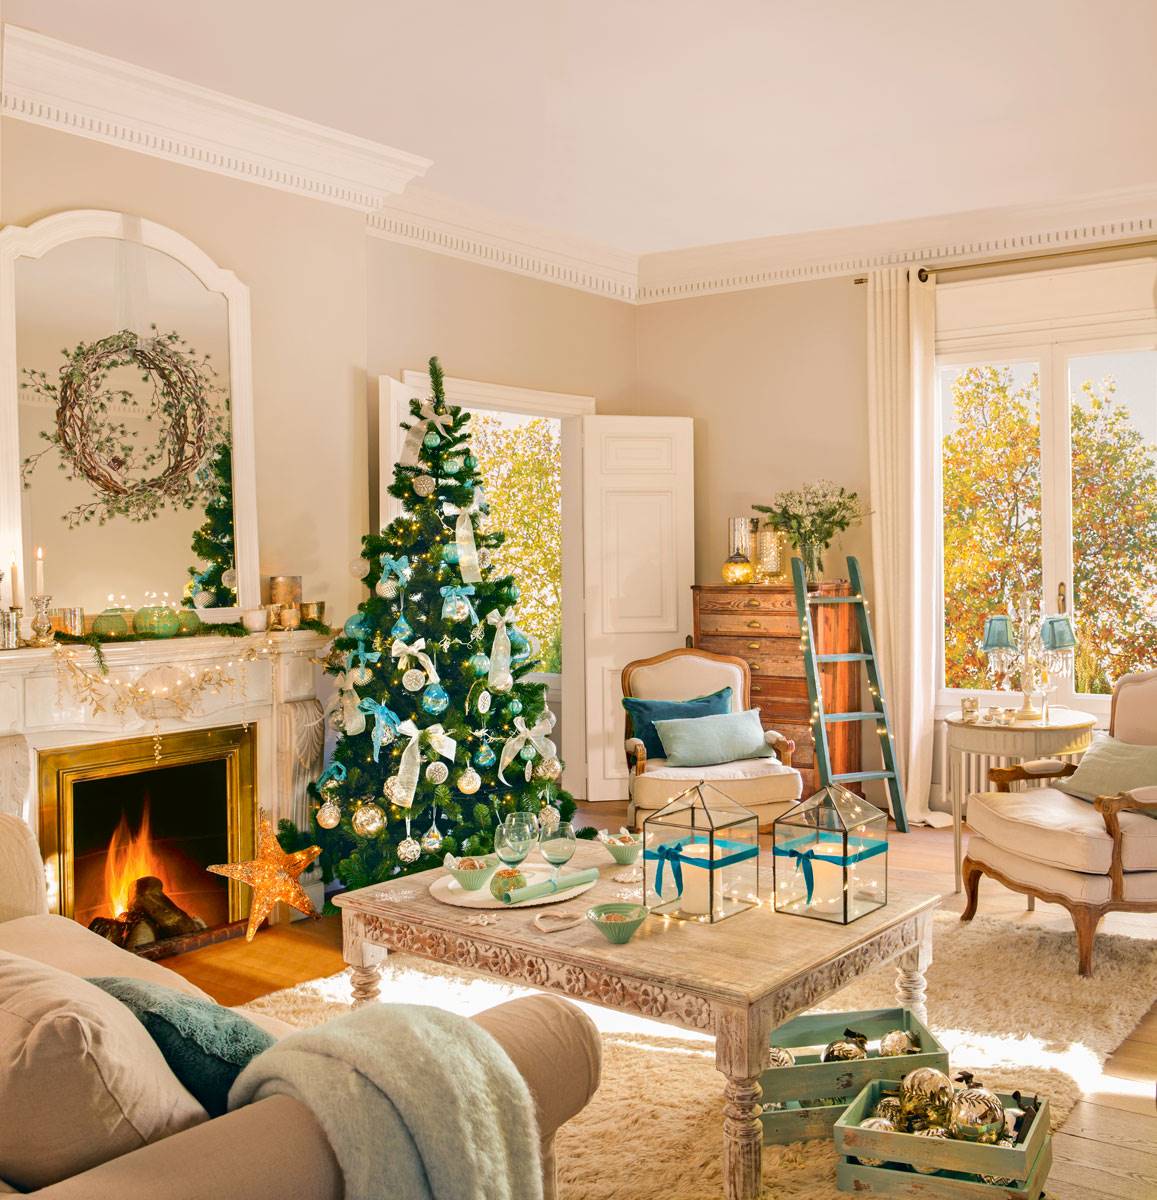 Salón clásico con chimenea, molduras, mesa de centro blanca, alfombra y árbol de Navidad decorado en azul.